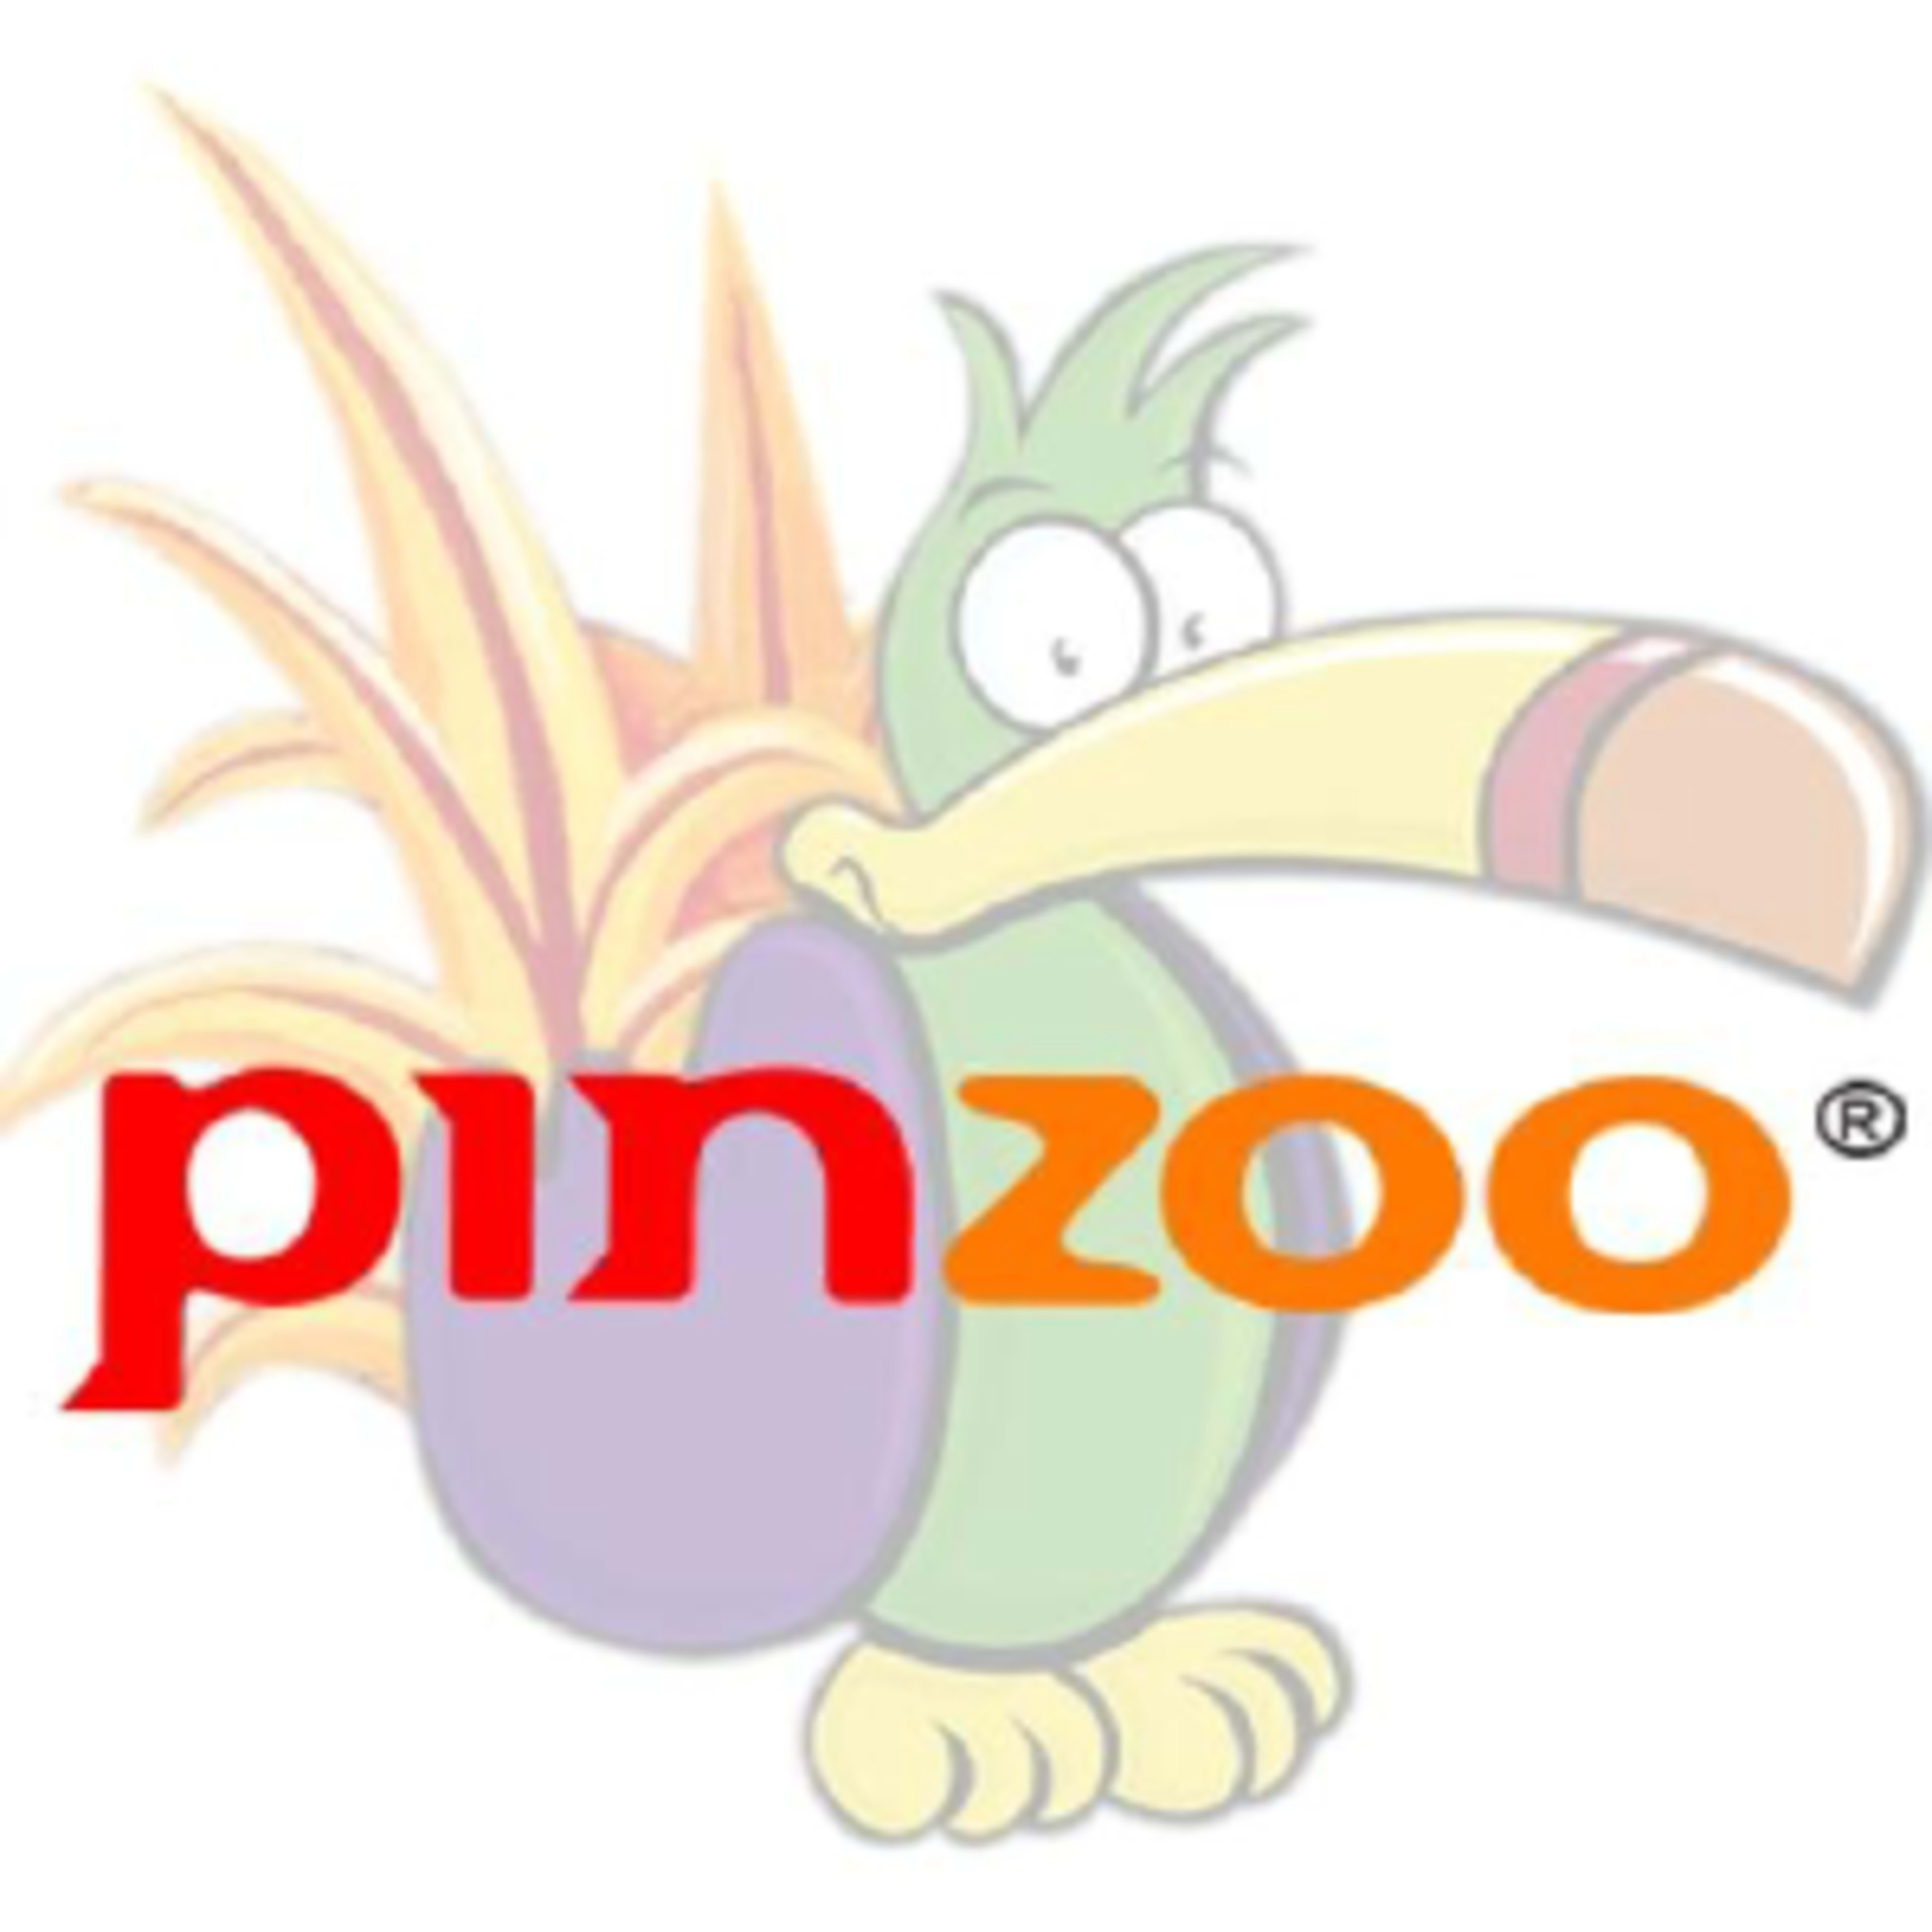 PinzooCode